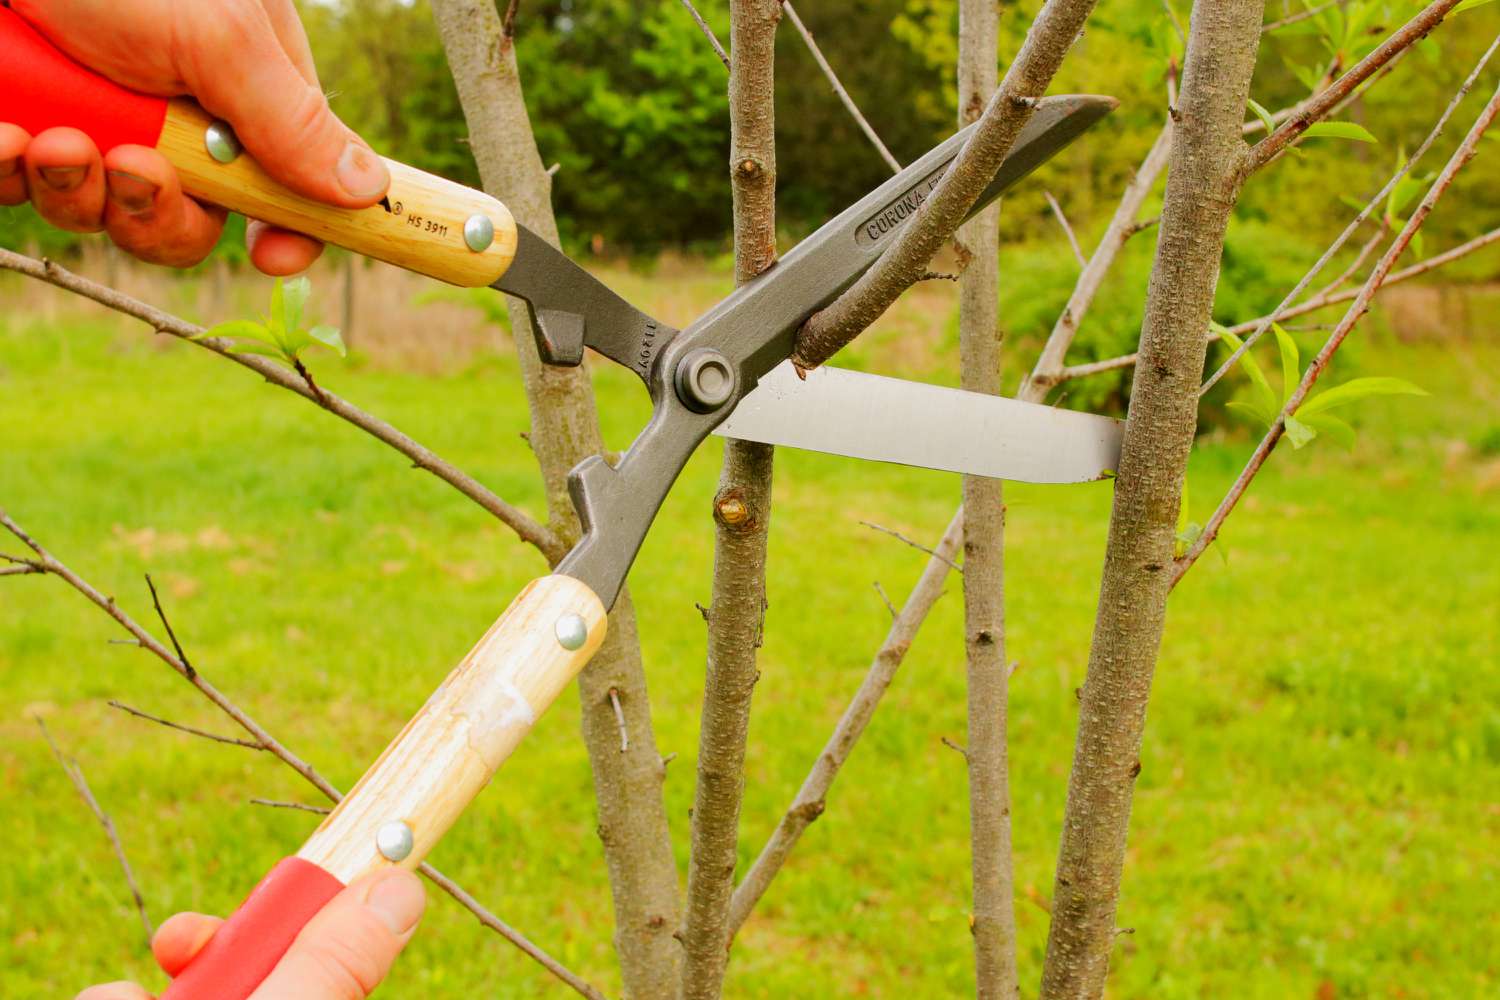 Pfirsichbaumzweig mit Bypass-Schere geschnitten, um neues Wachstum zu fördern